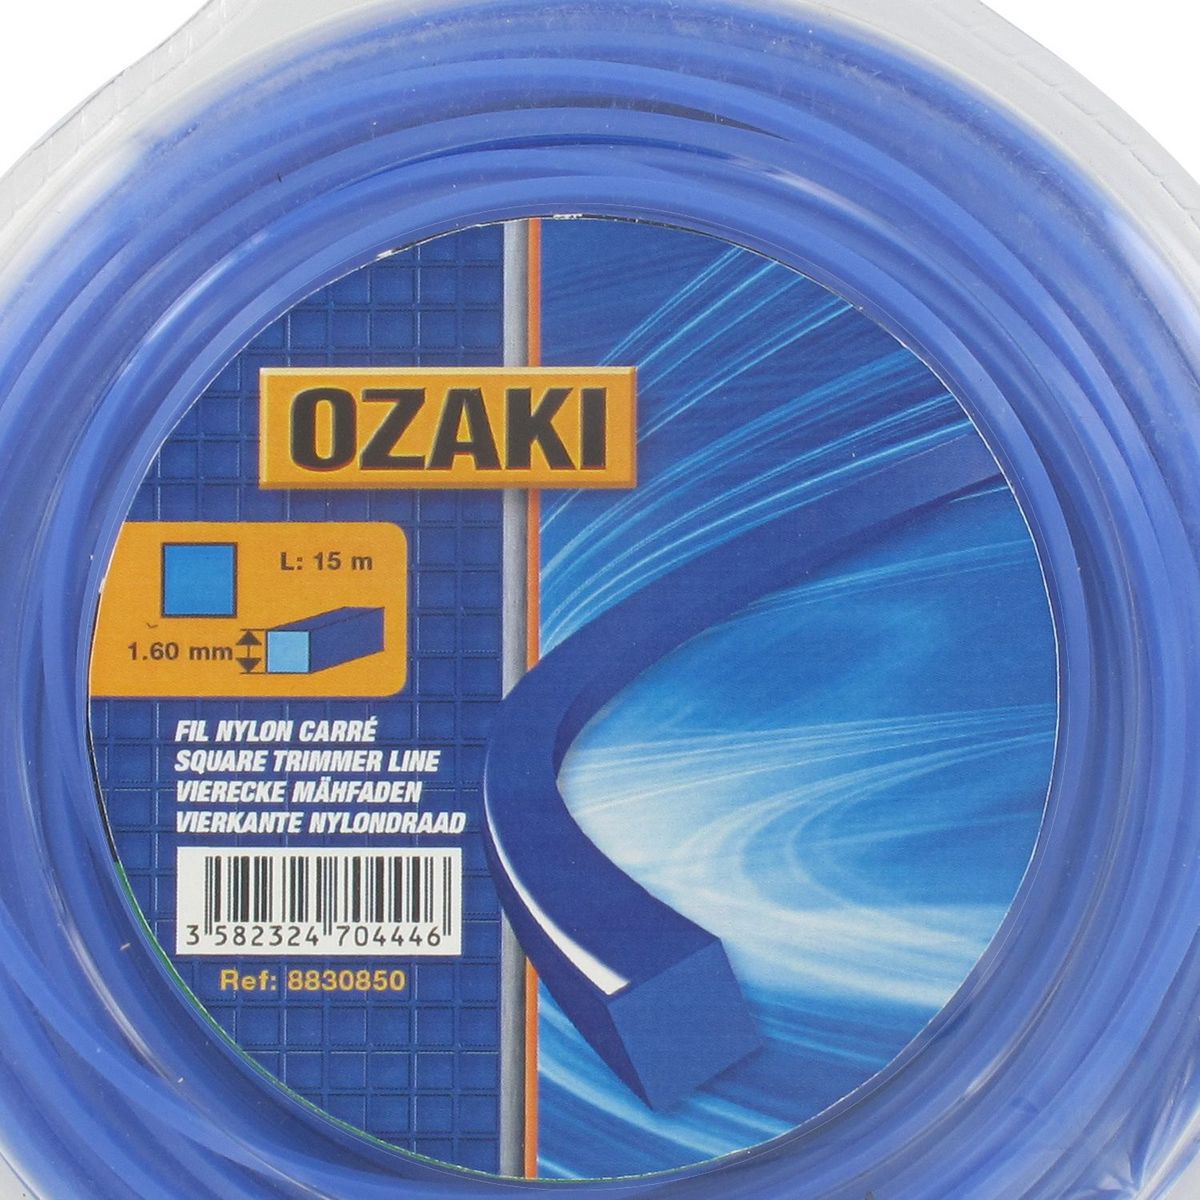 OZAKI Fil nylon carré d. 1,60 mm